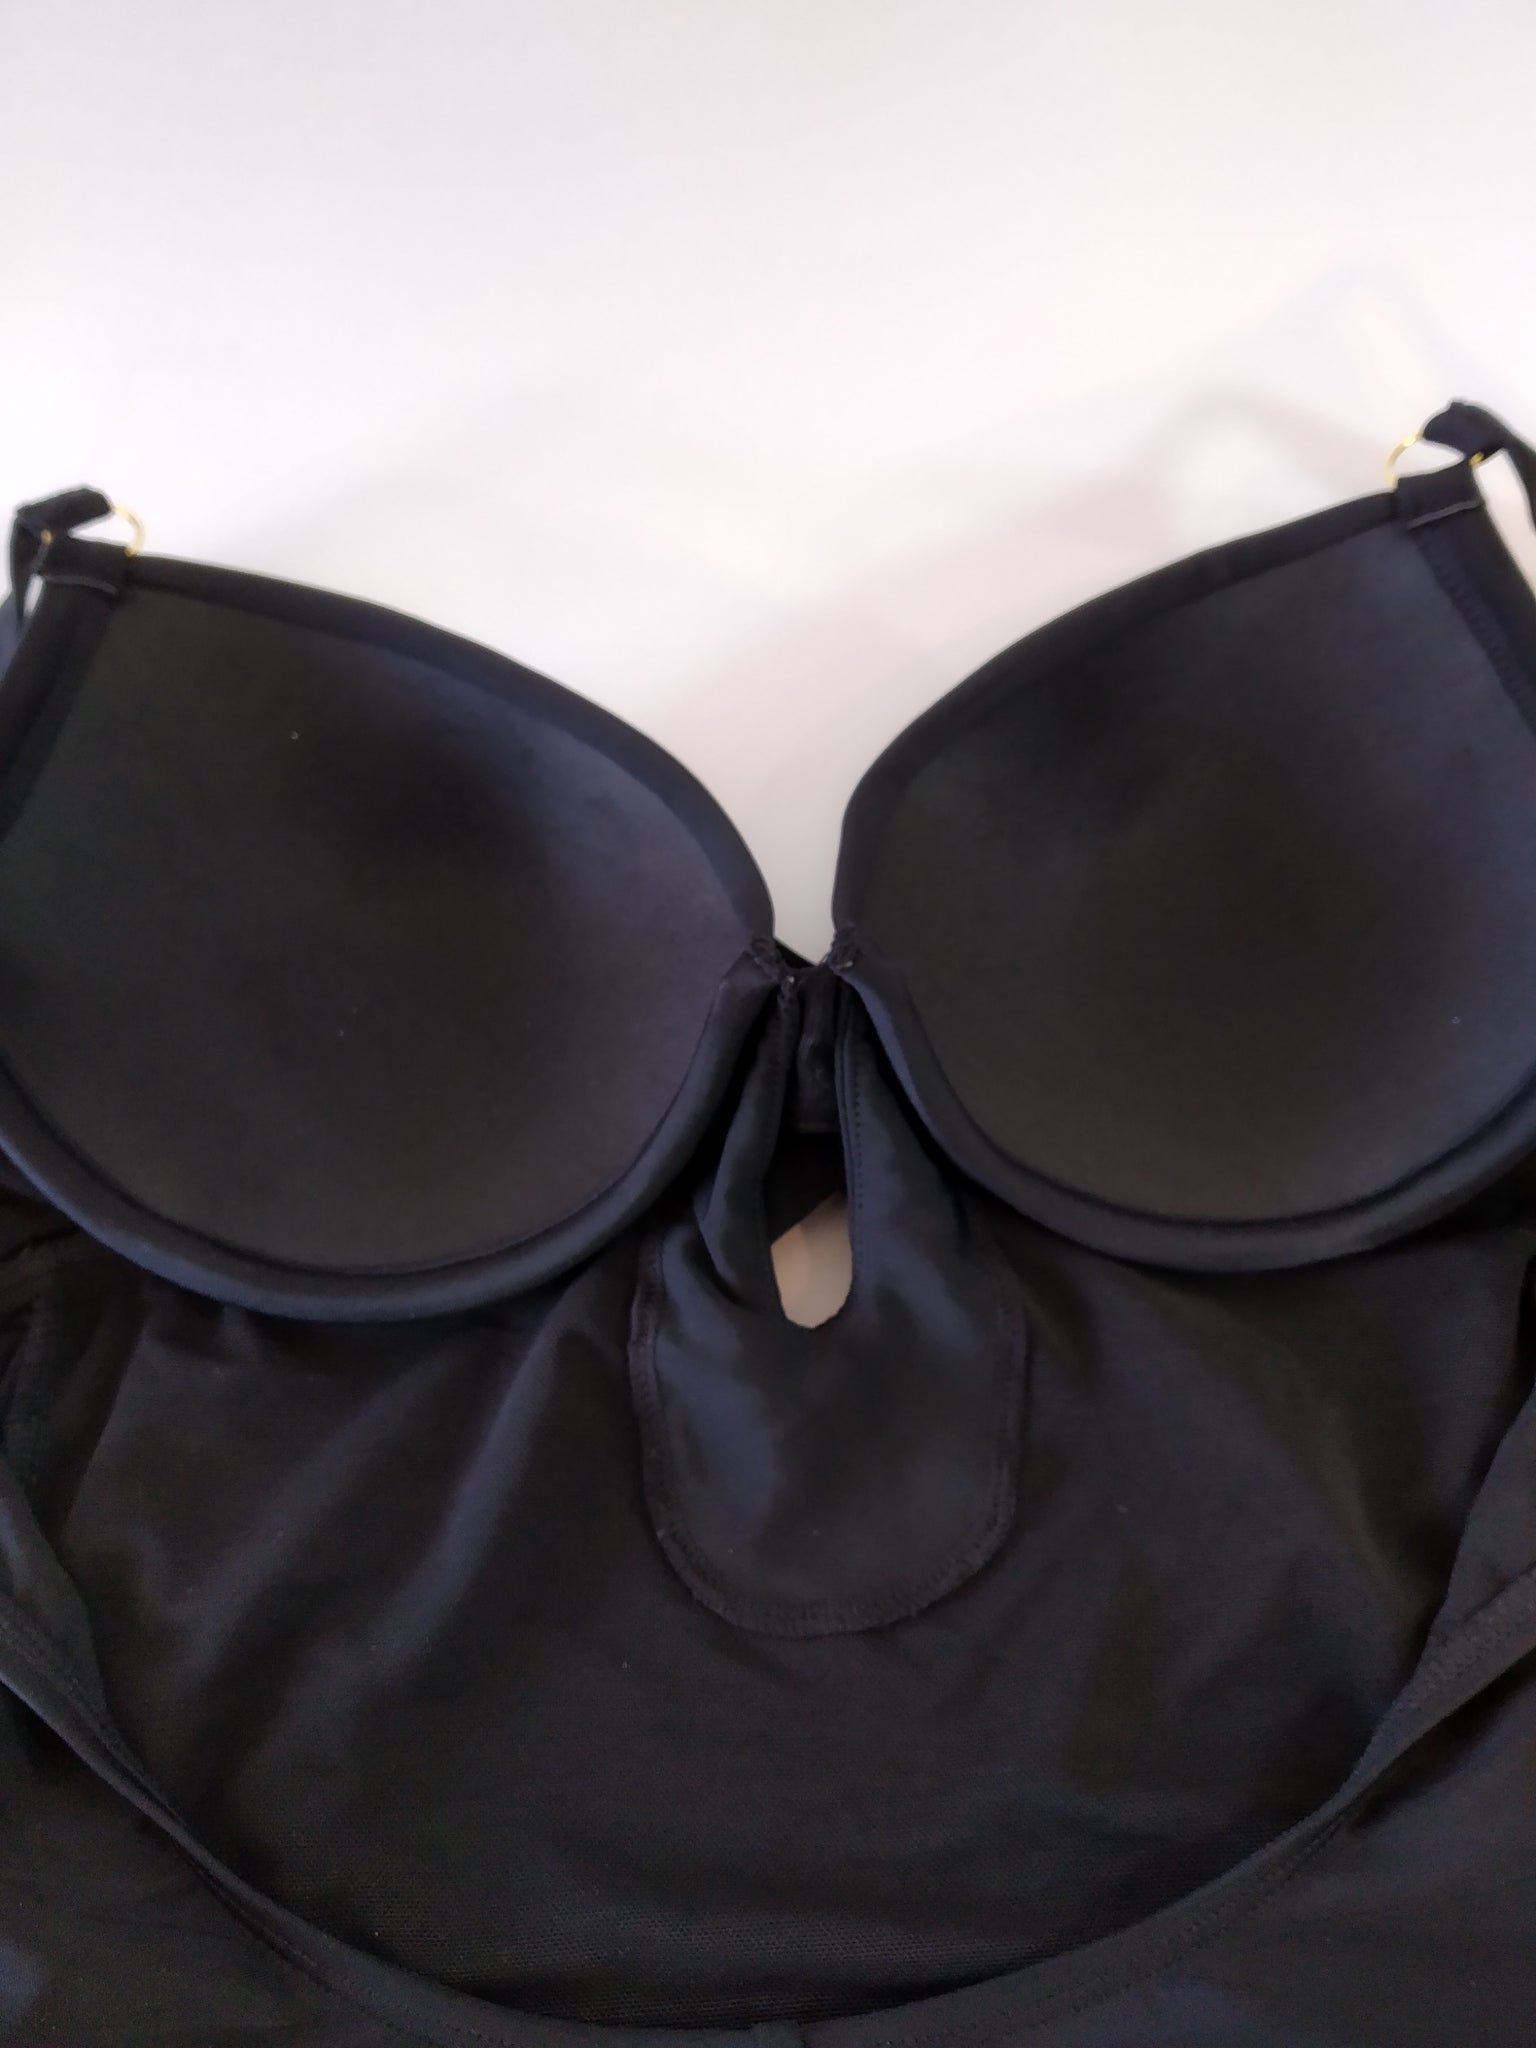 black swimsuit with push-up underwiredmaillot de bain noir avec soutien gorge push-up armaturtraje de baño negro con sujetador con aros push-upes bra,,